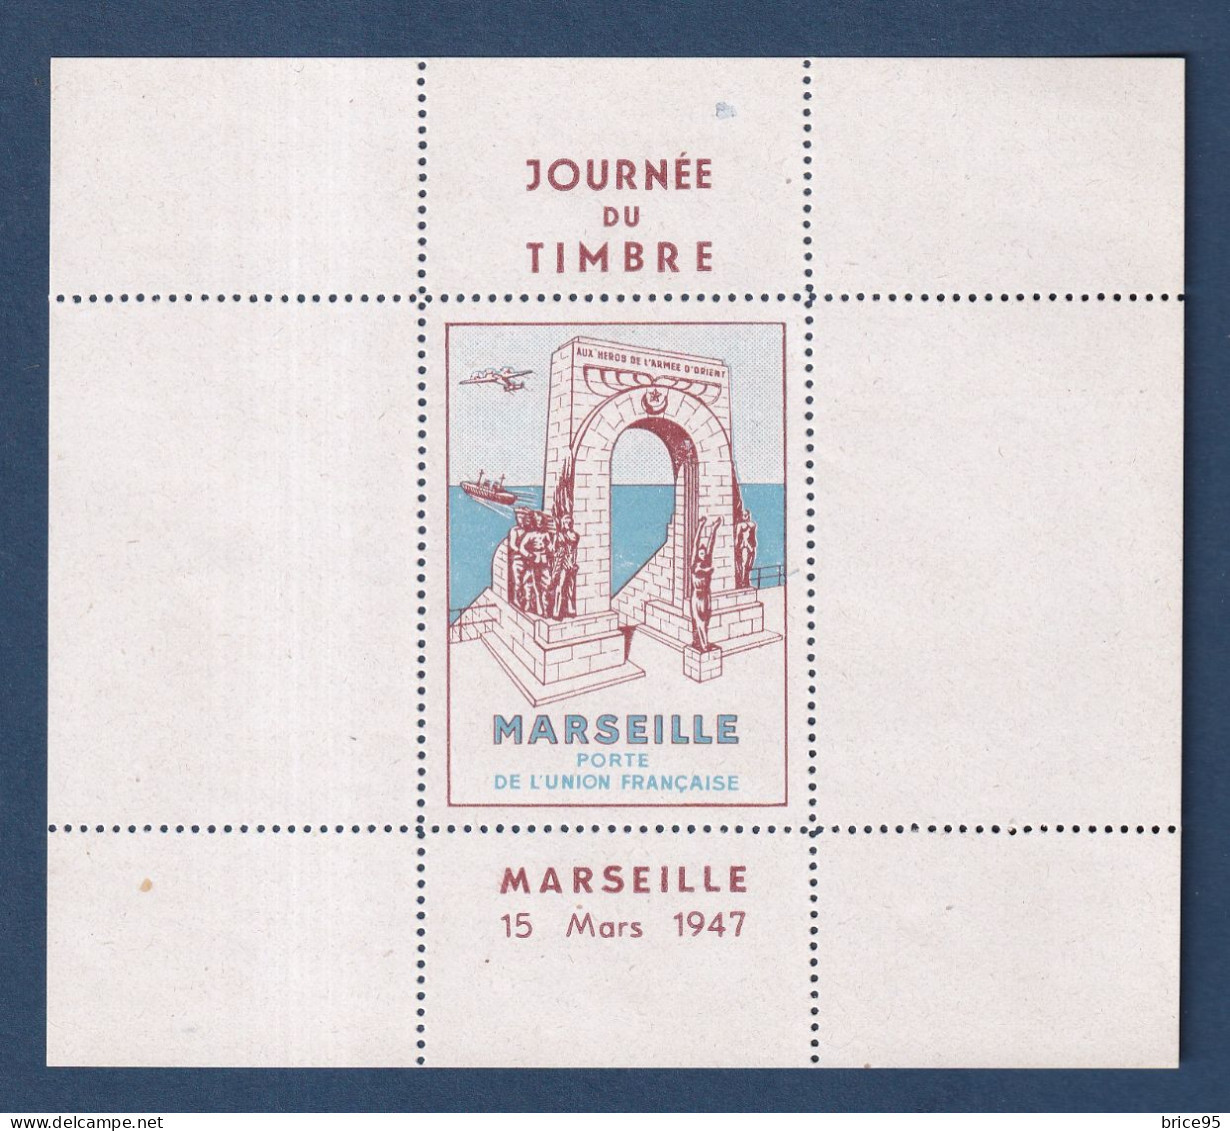 France - Vignette - Journée Du Timbre - Marseille - Porte De L'union Française - Neuf Sans Charnière ** - 15 Mars 1947 - Filatelistische Tentoonstellingen